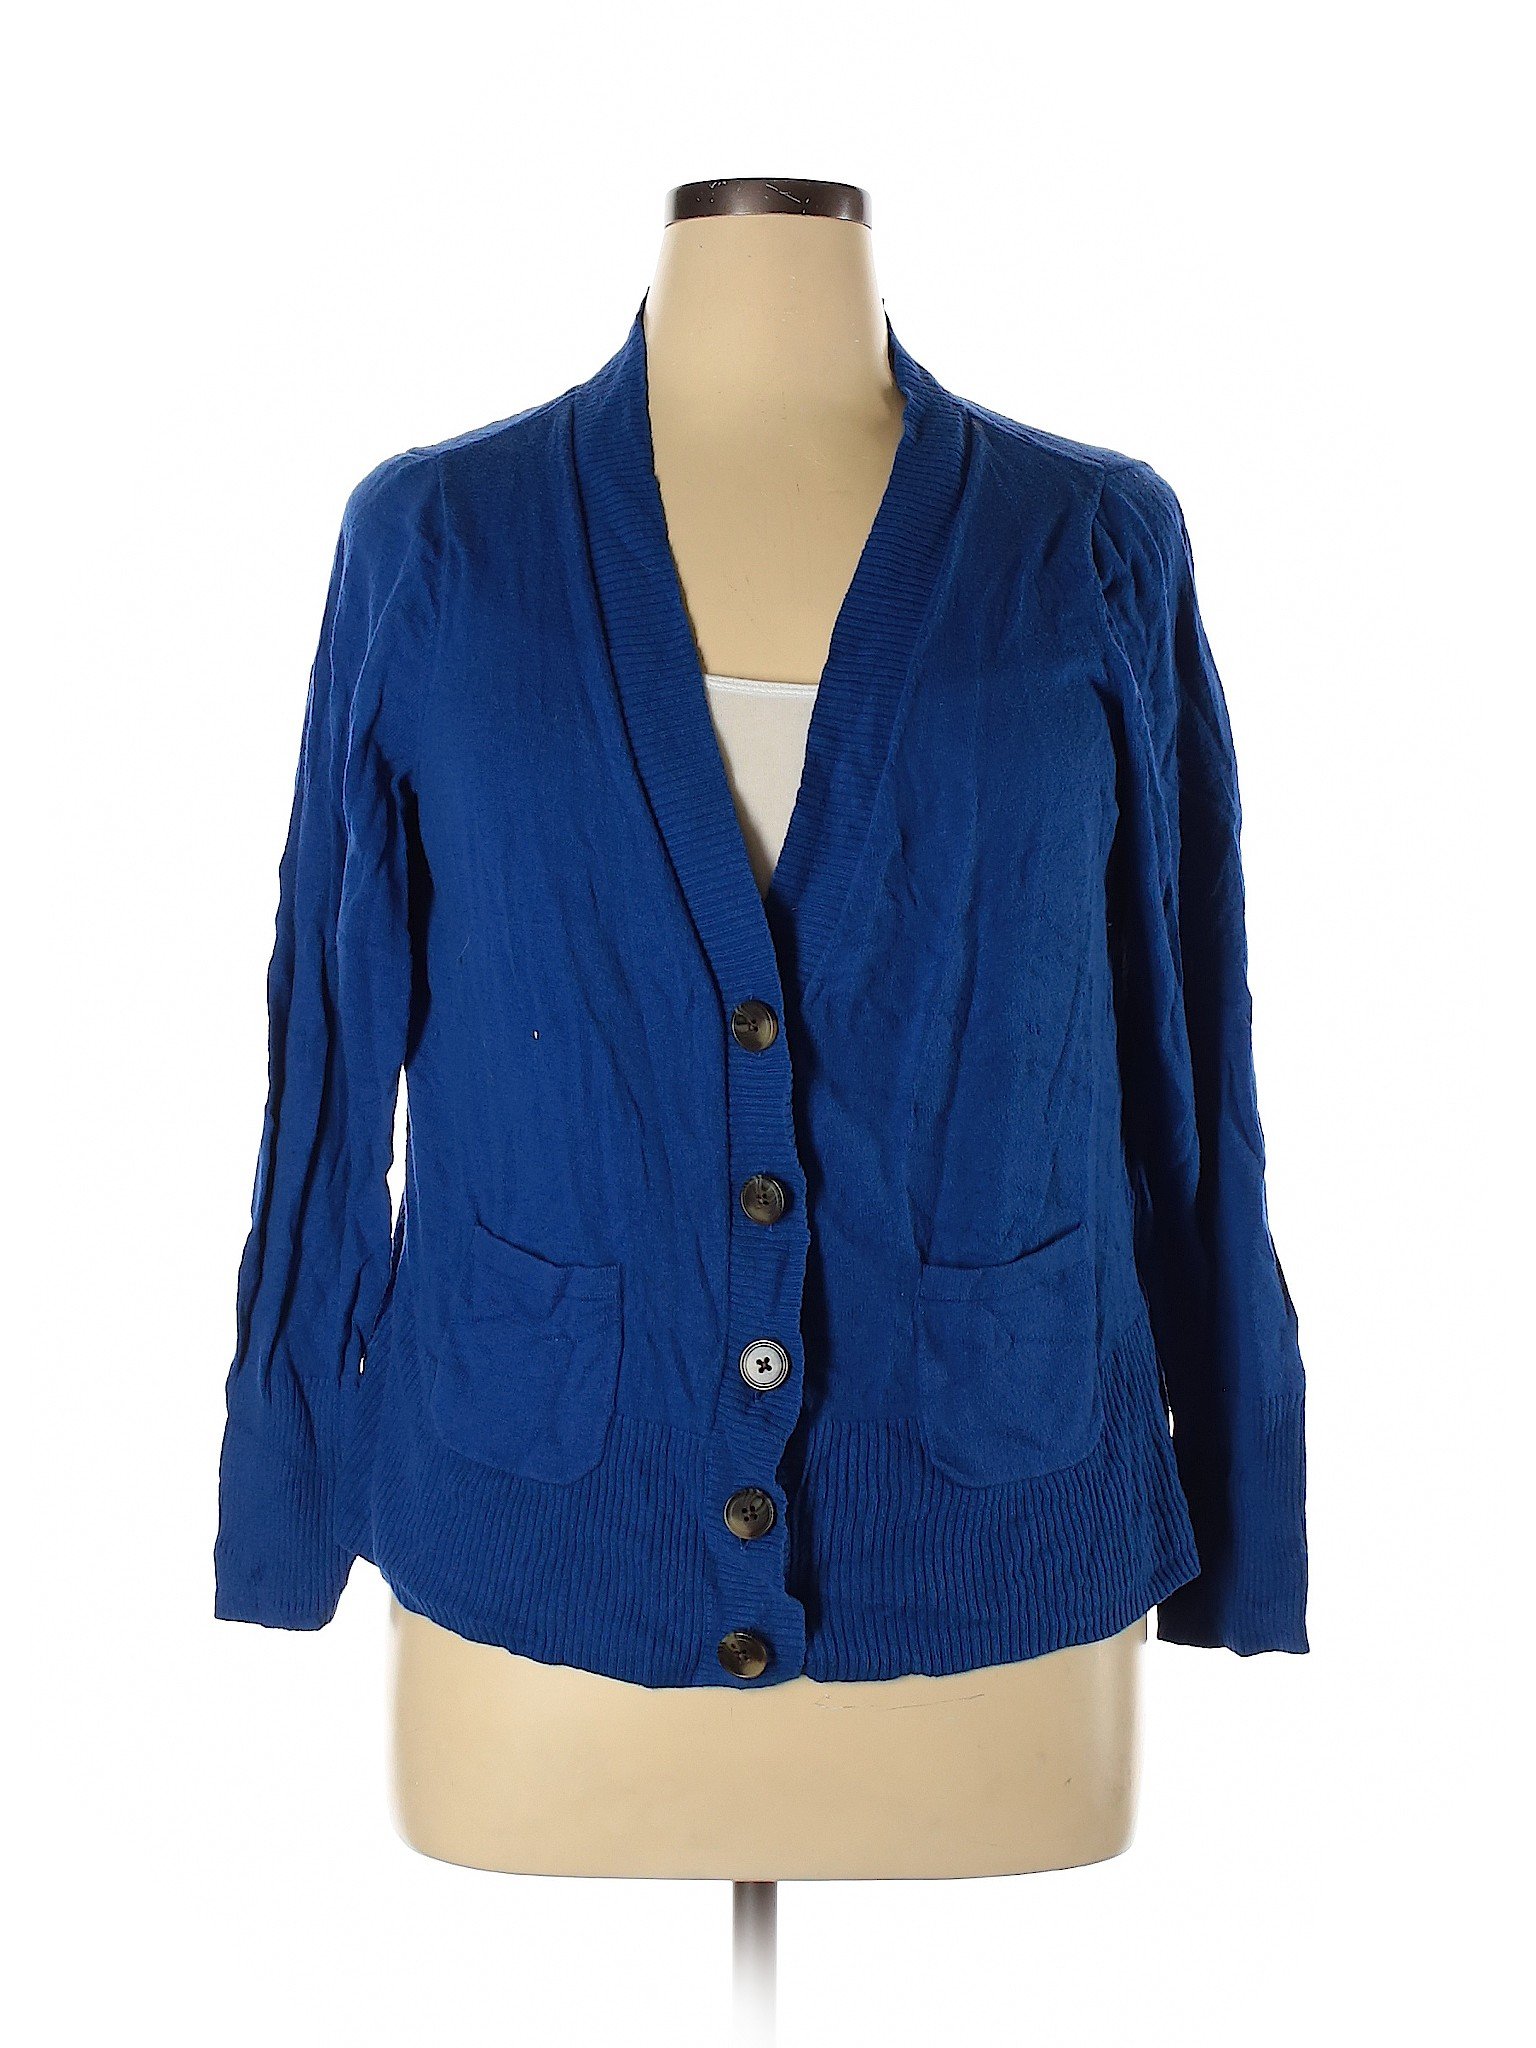 Jcpenney Women Blue Cardigan 1X Plus | eBay